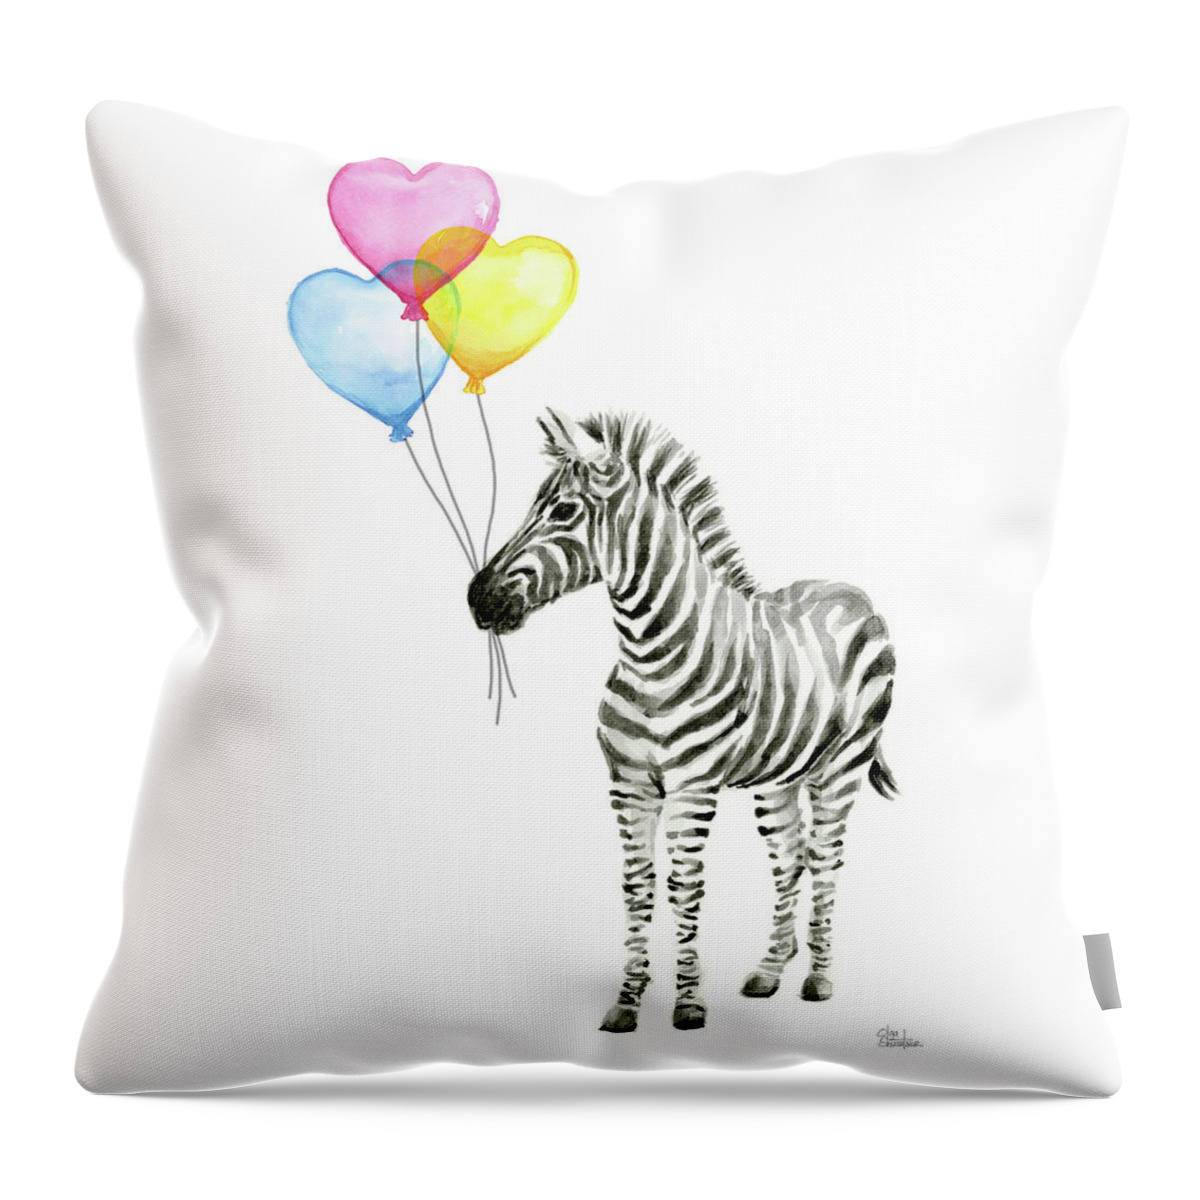 Animaux ballons - Zebra textiles